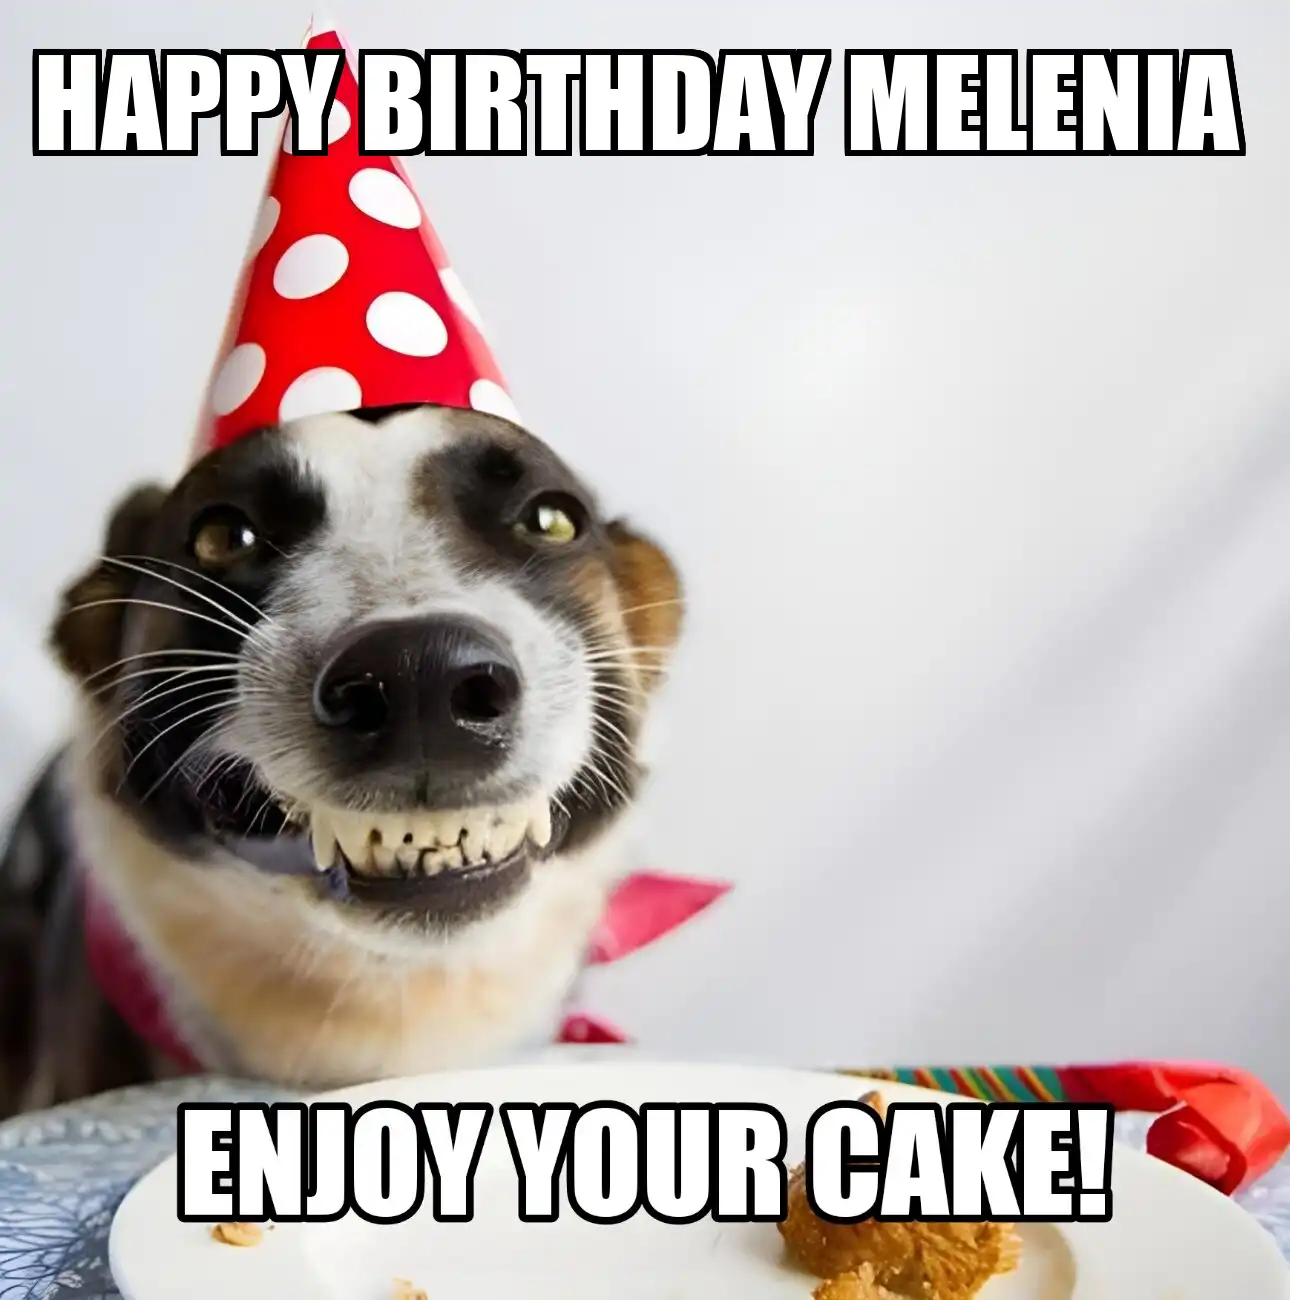 Happy Birthday Melenia Enjoy Your Cake Dog Meme